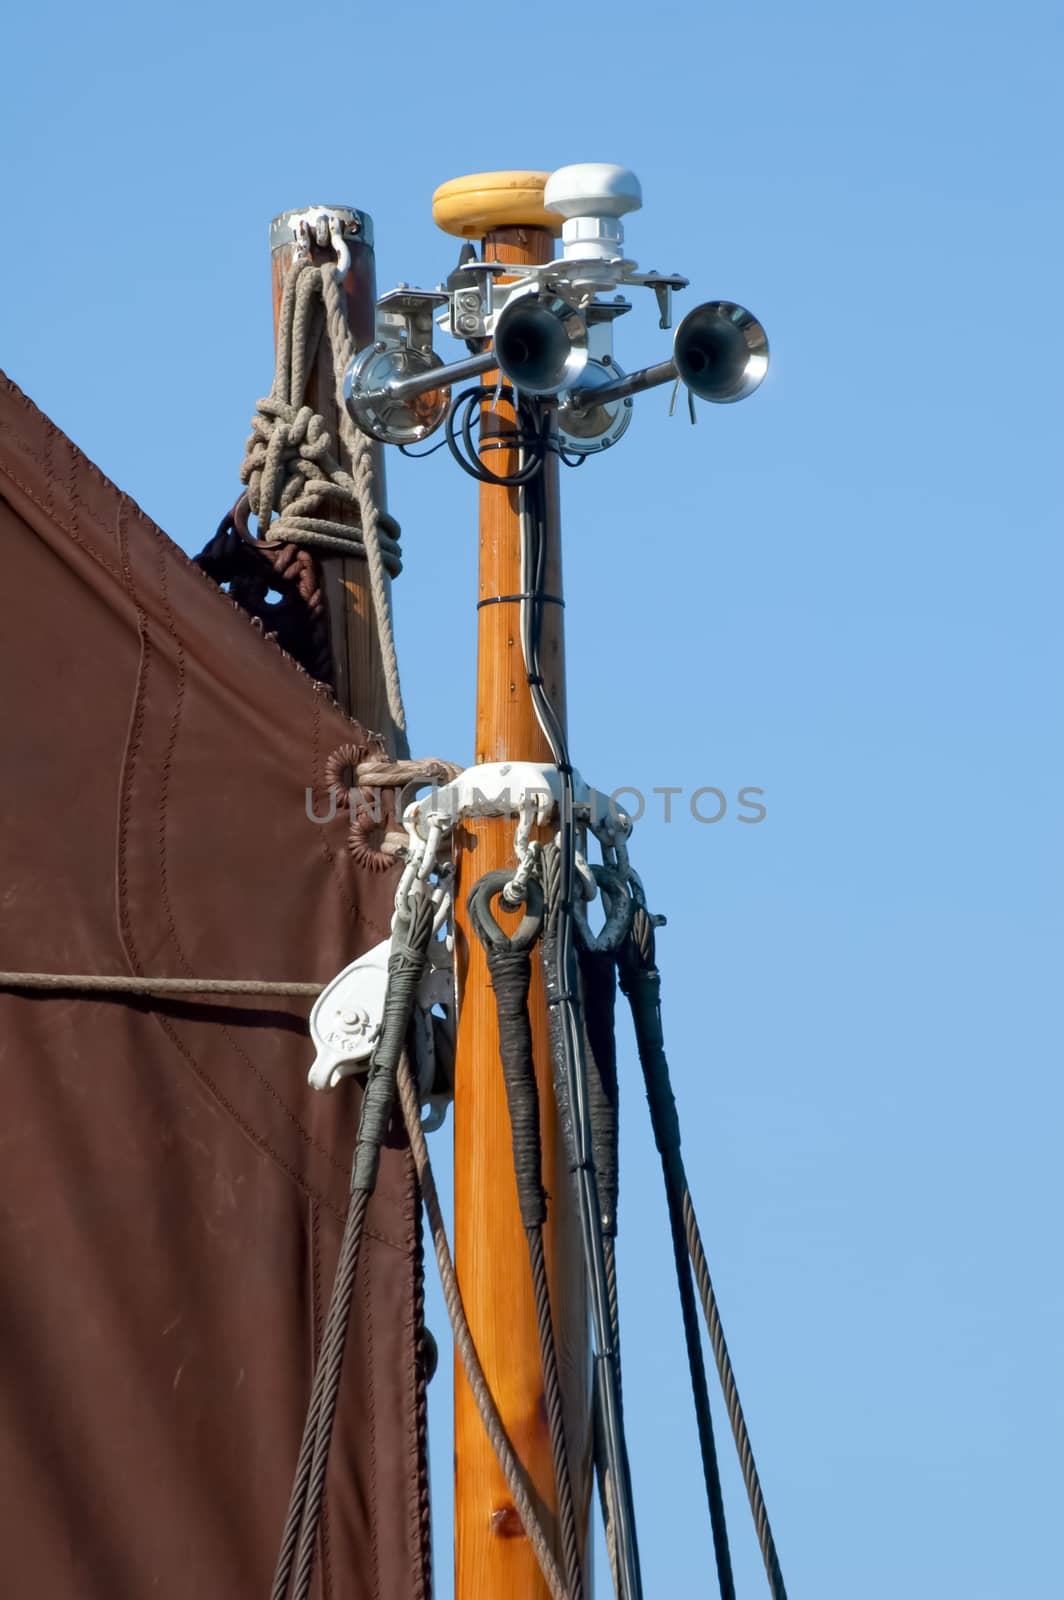 fog warning horns on a vintage sailboat mast